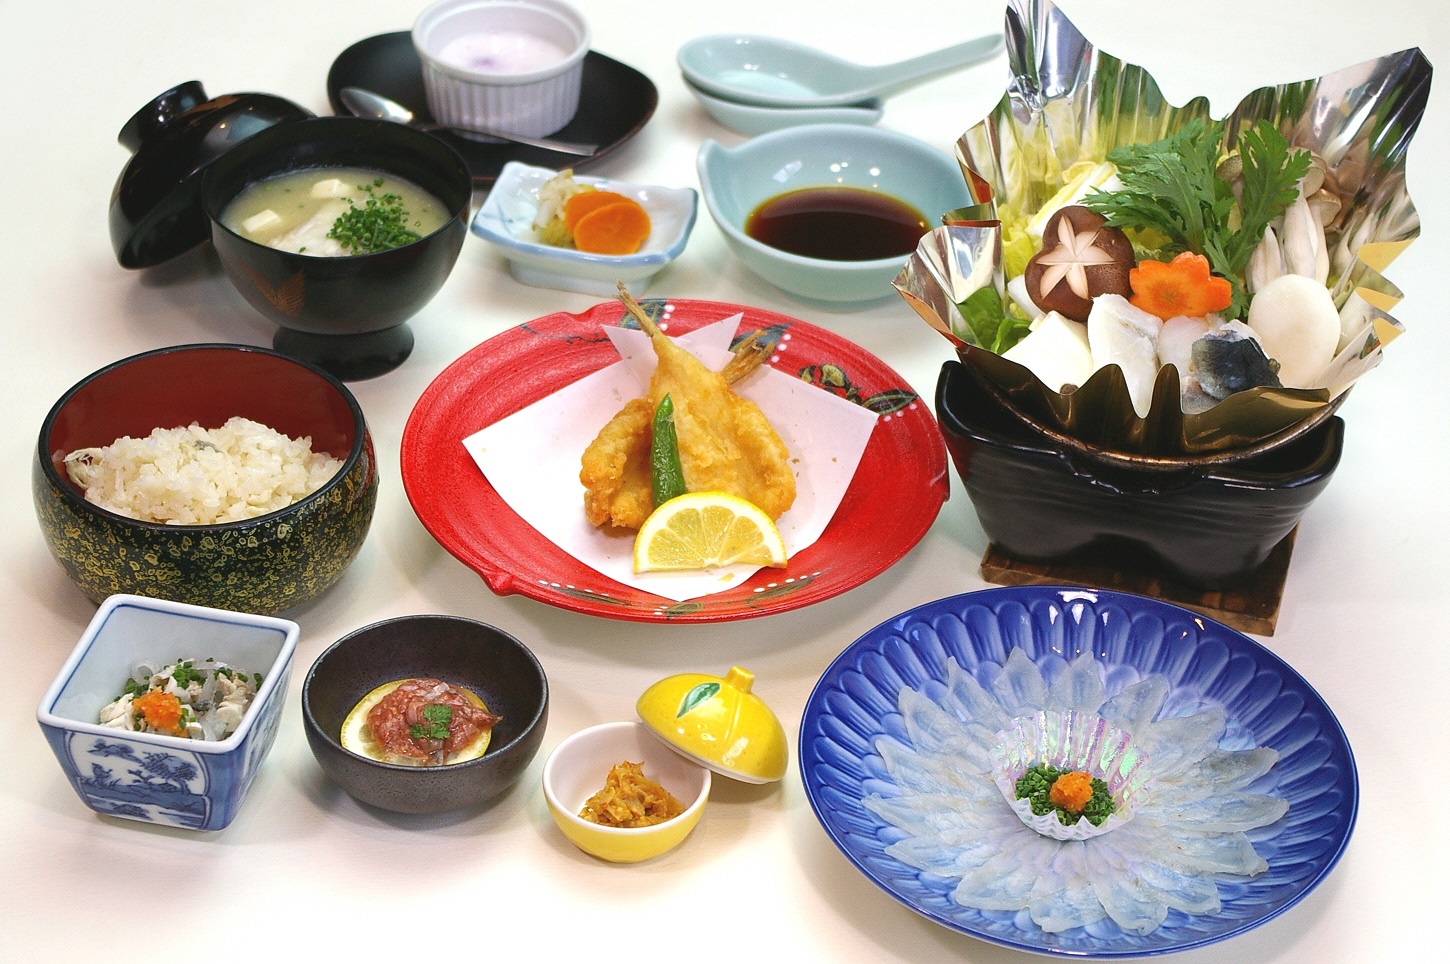 下關是河豚料理的發源地。本行程史無前例安排來賓親臨全日本第一家獲得河豚料理執照的高級料亭 – 下關春帆樓，體驗這日本料理的極致美味。